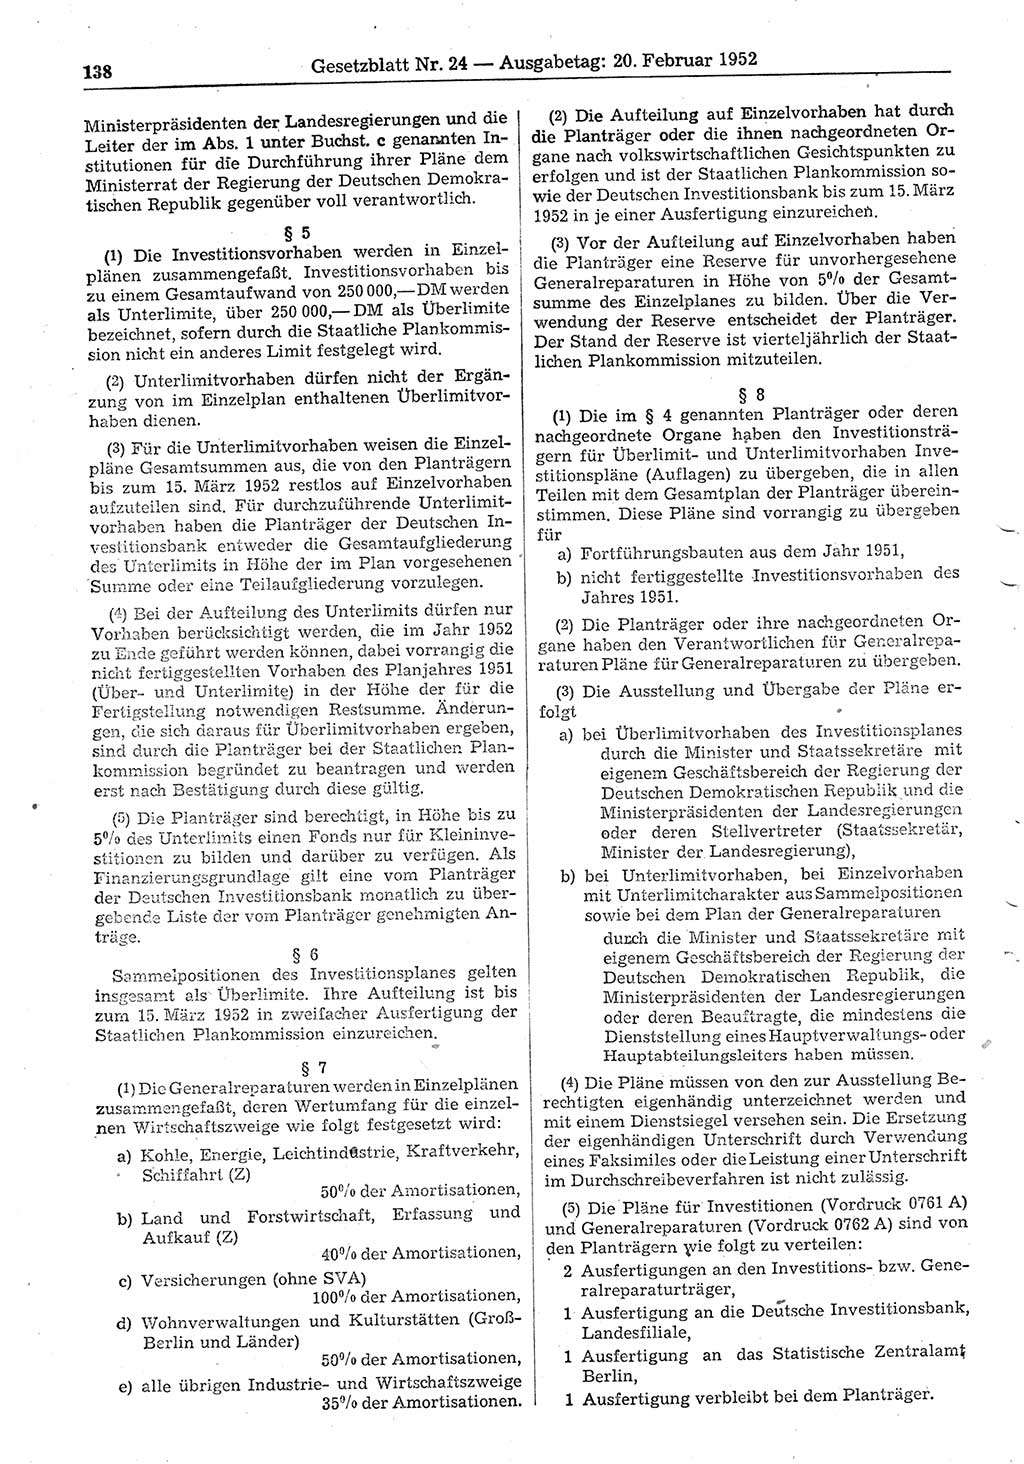 Gesetzblatt (GBl.) der Deutschen Demokratischen Republik (DDR) 1952, Seite 138 (GBl. DDR 1952, S. 138)